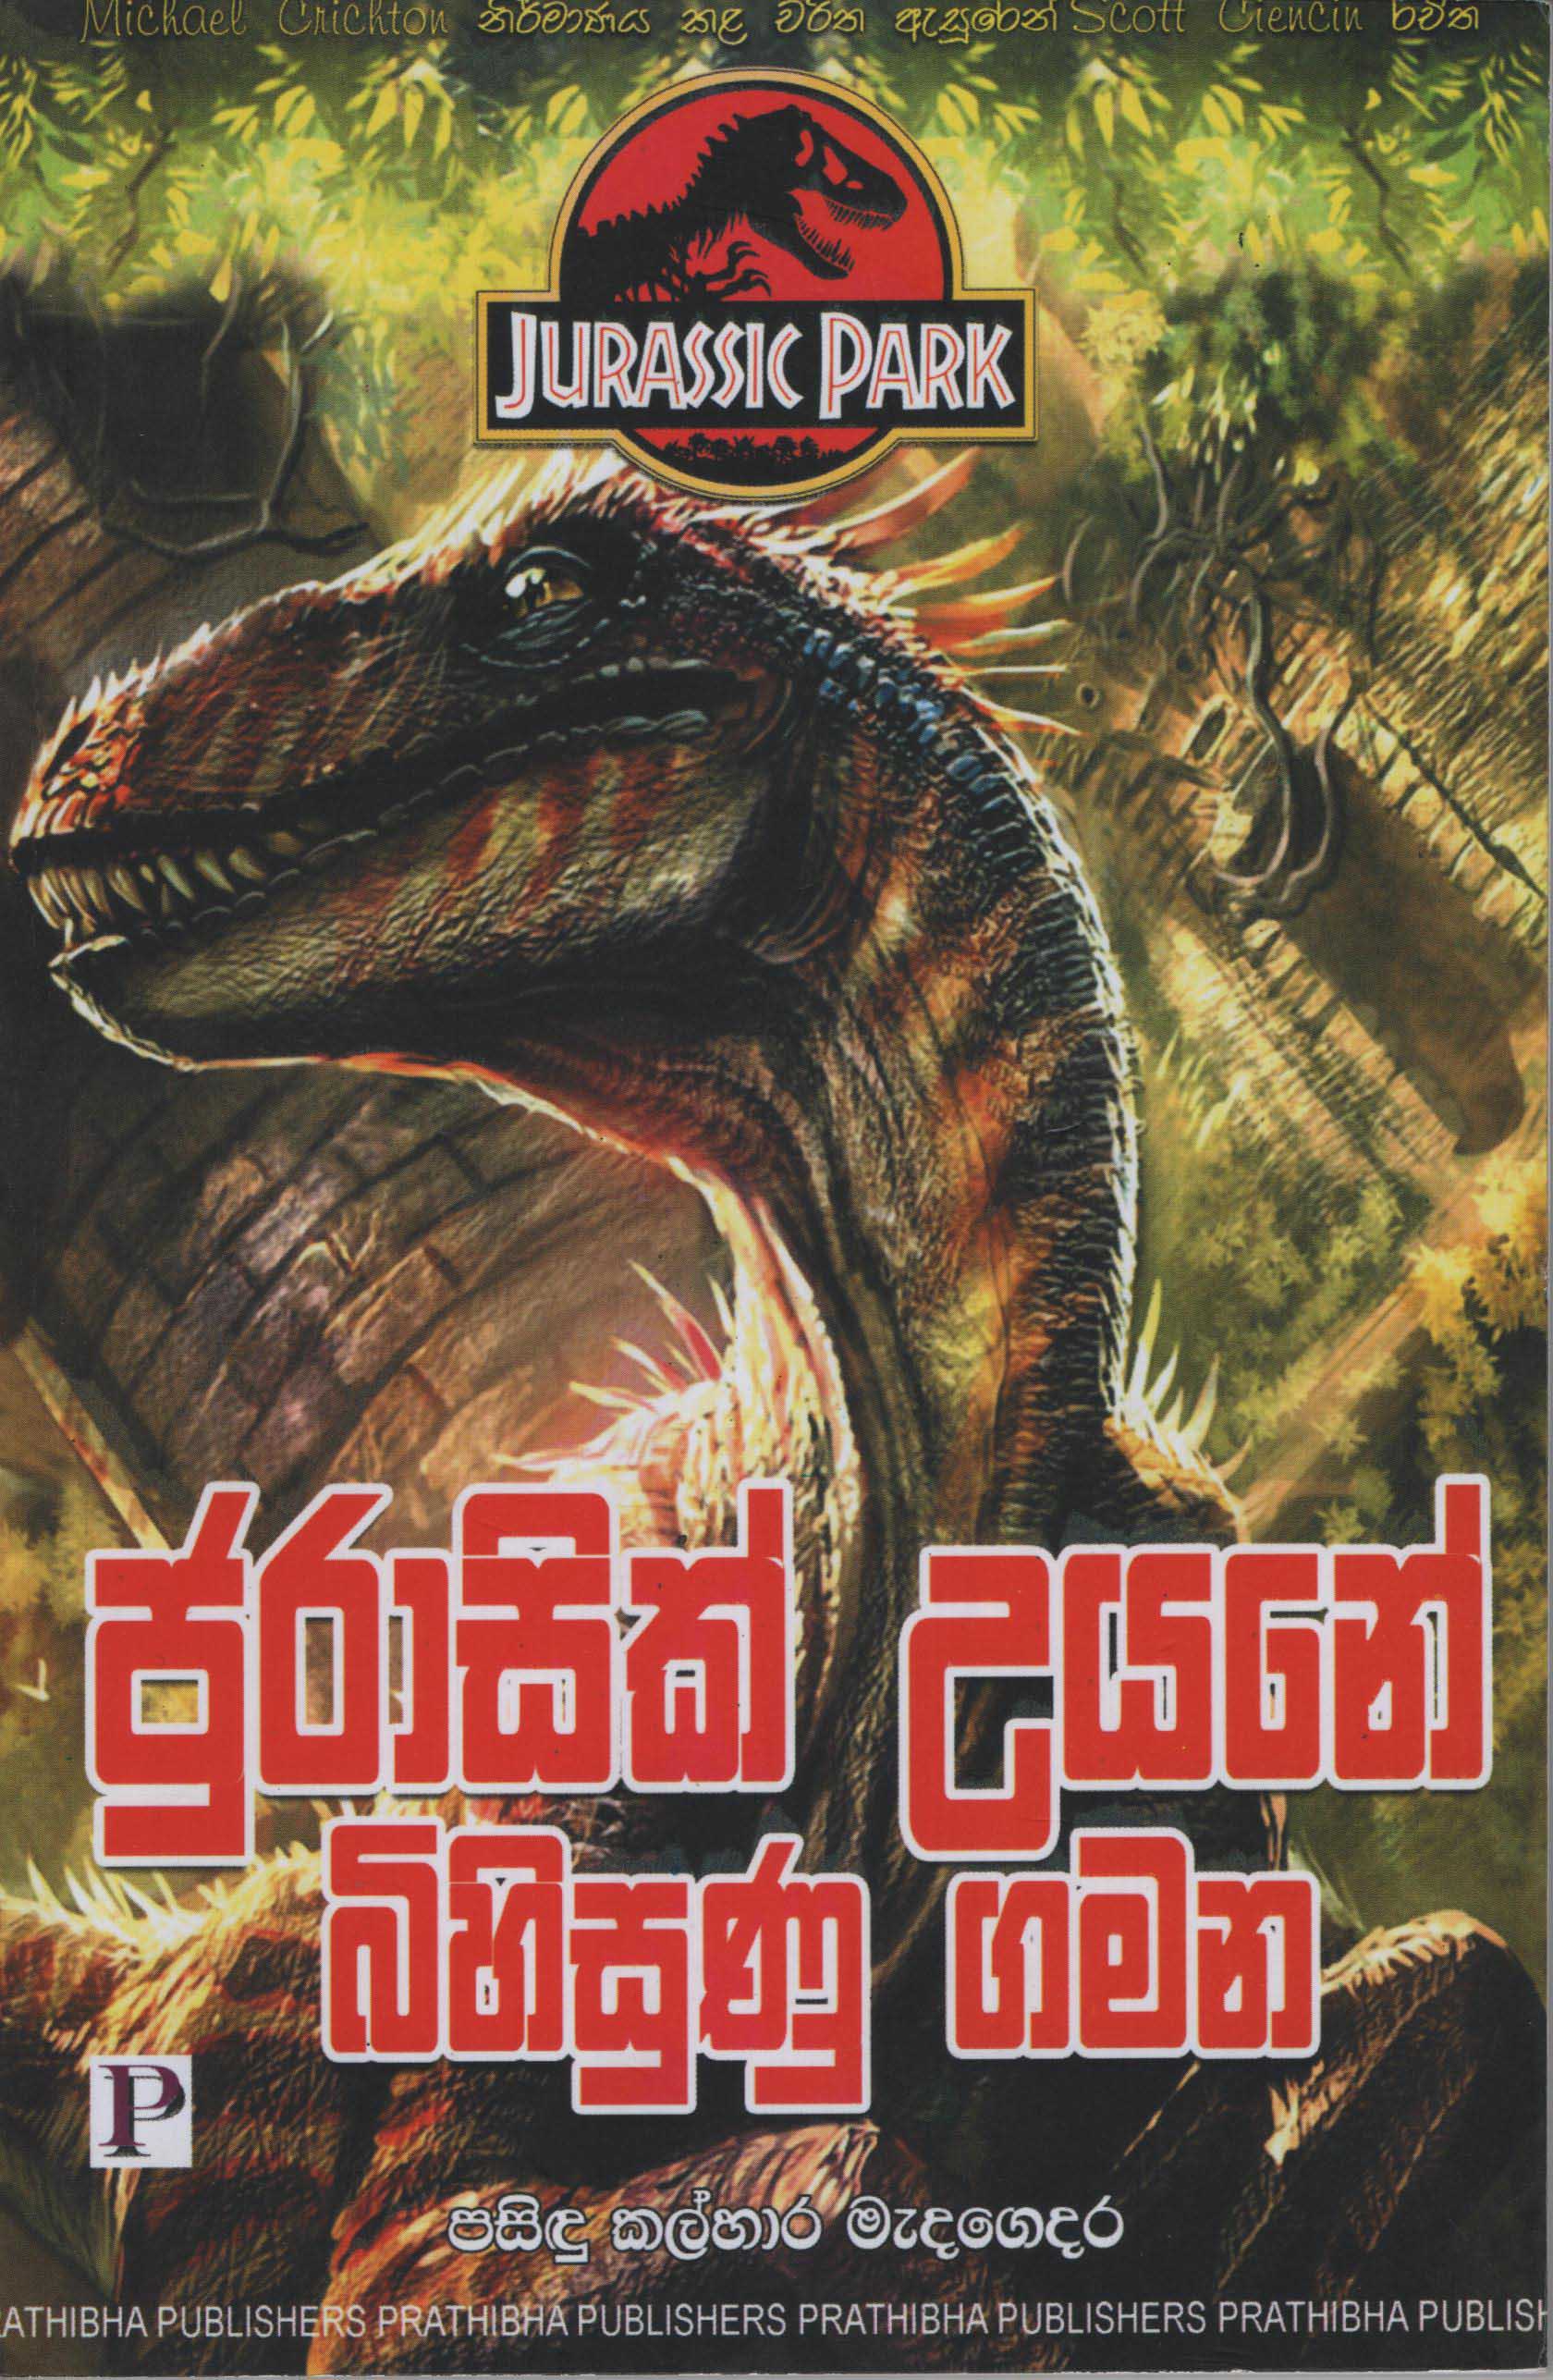 Jurassic Uyane Bihisunu Gamana (Jurassic Park by Scott Ciencin)